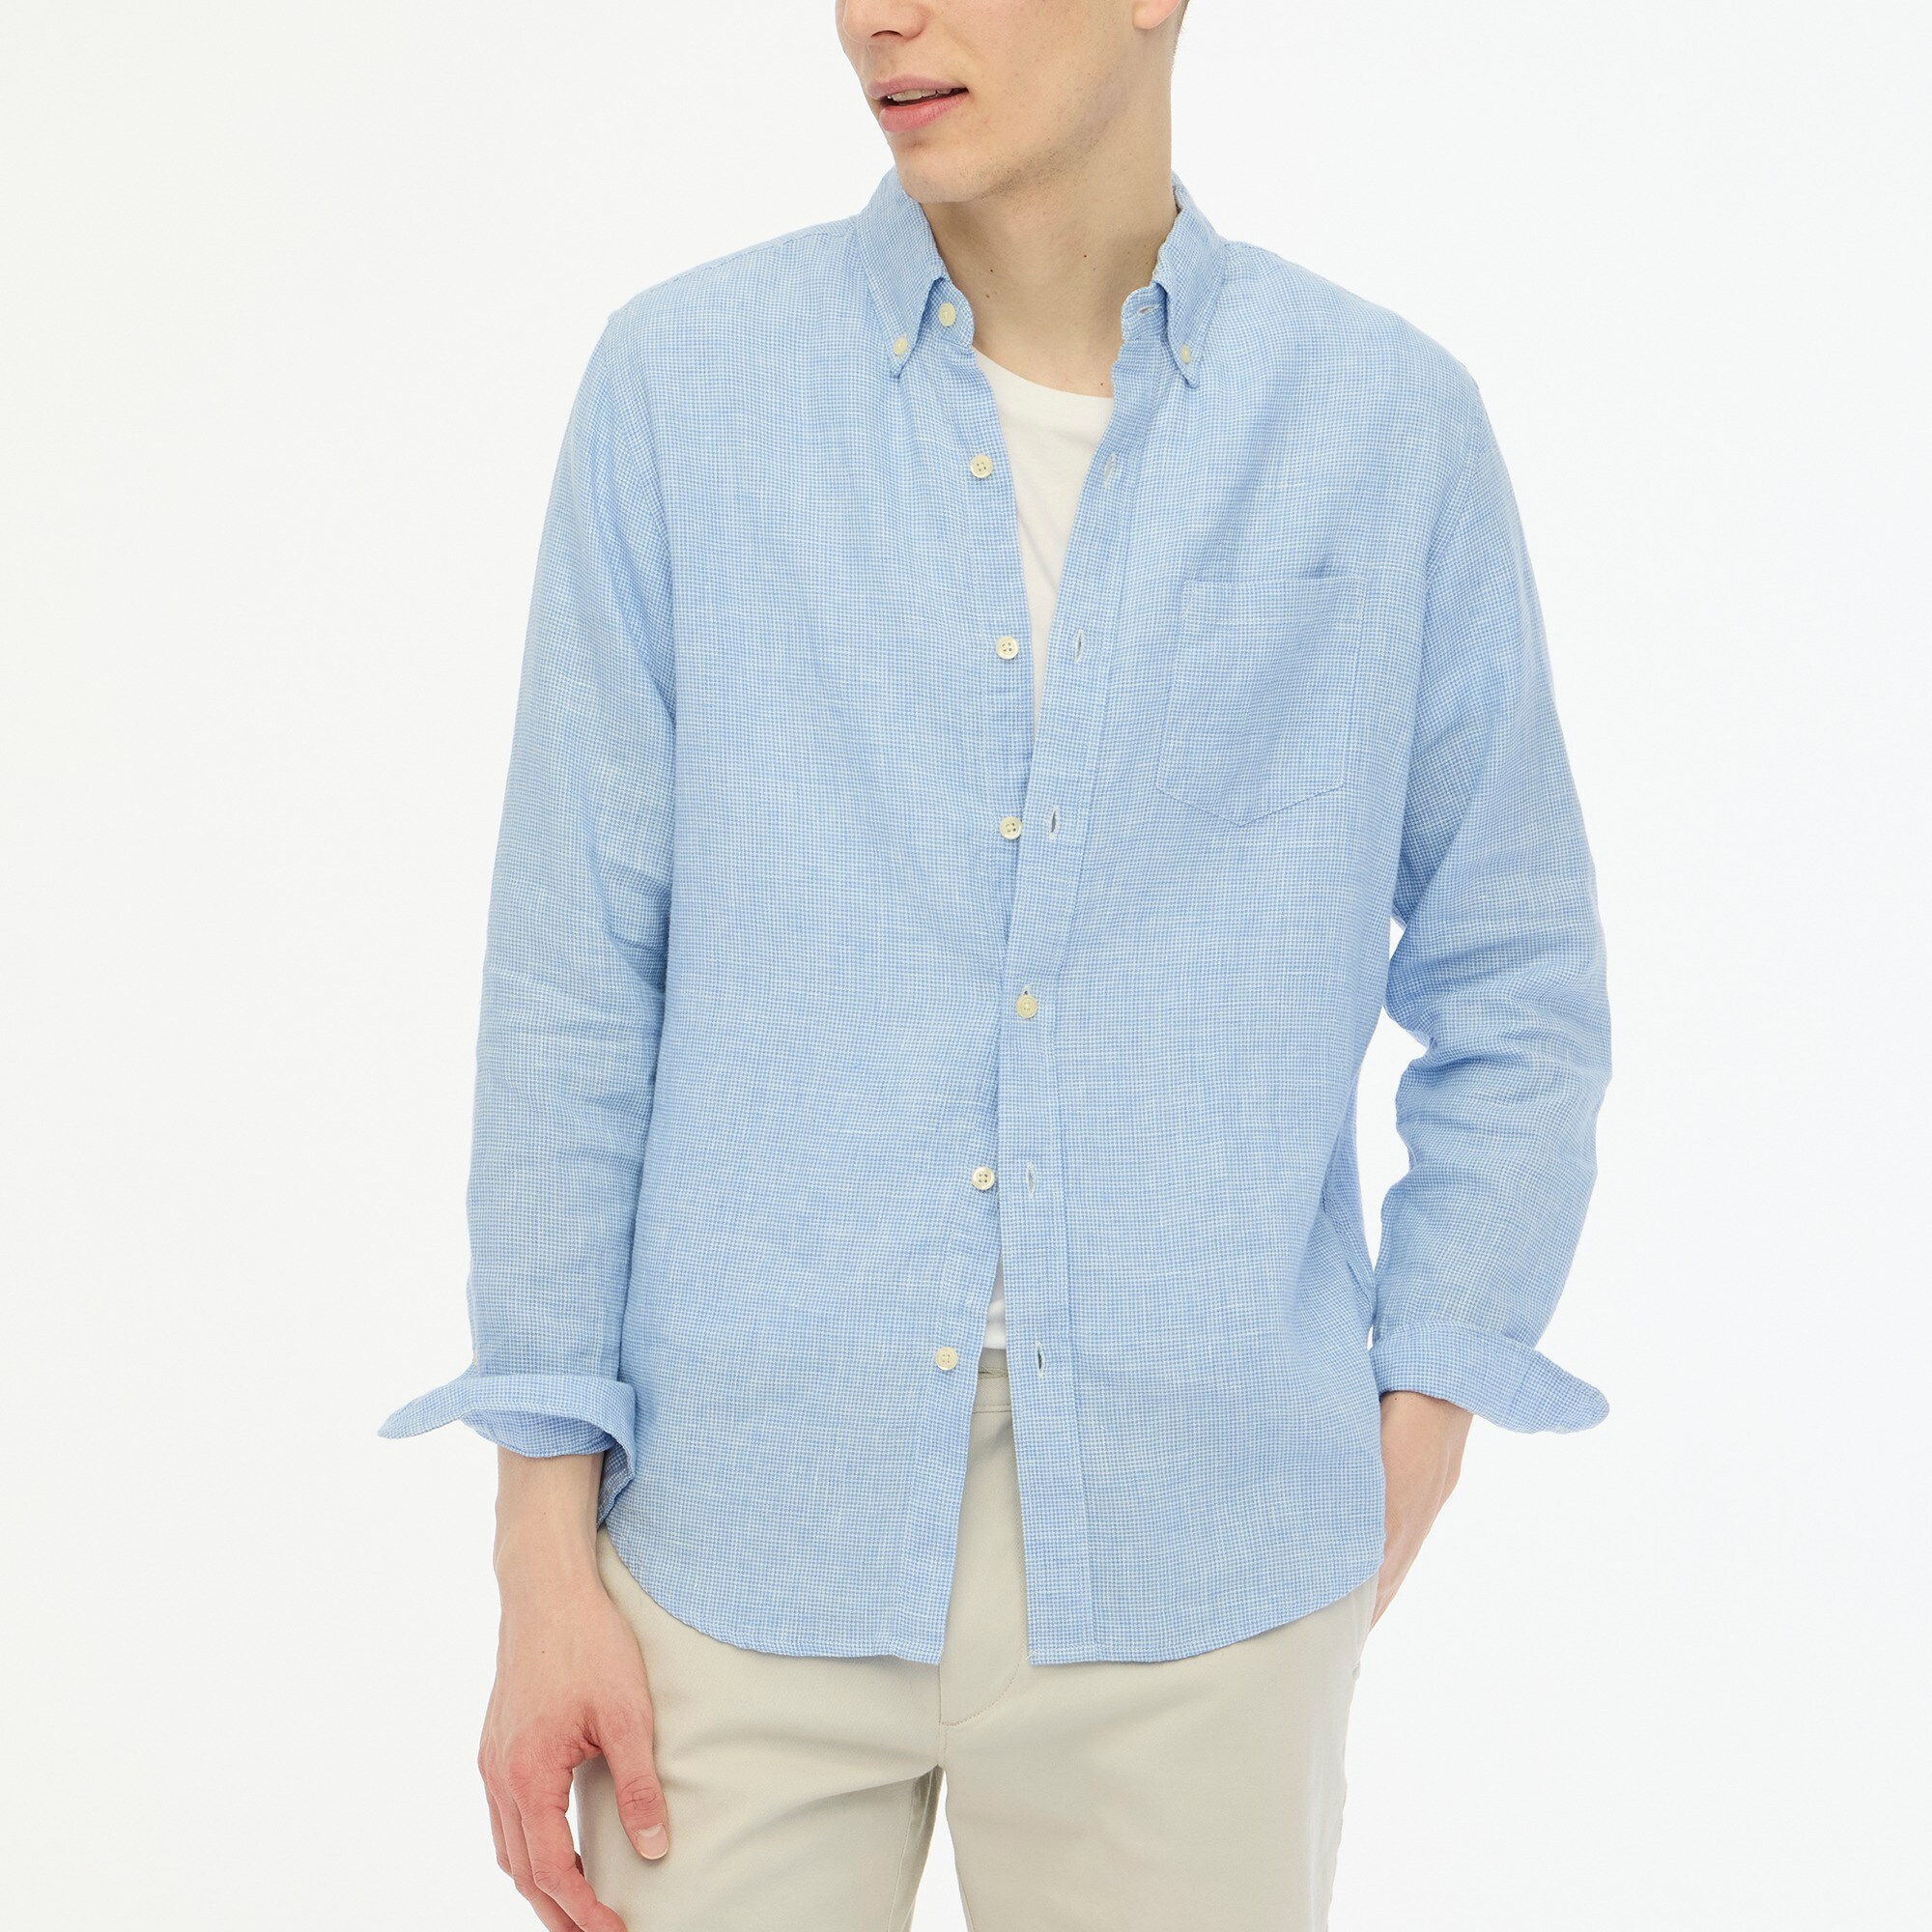  Linen-blend casual shirt